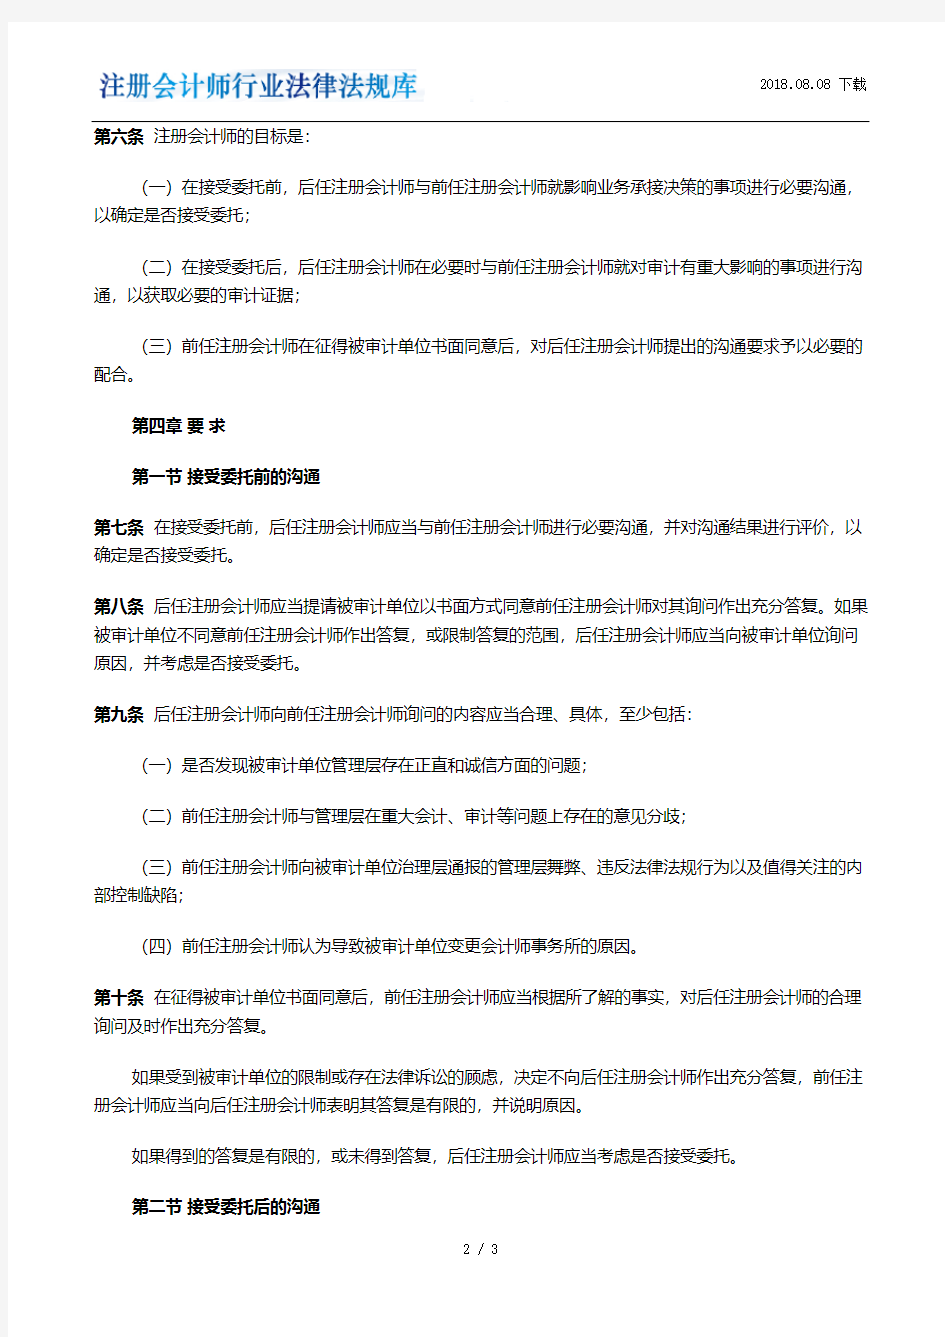 中国注册会计师审计准则第1153号(现行有效)(2010发布)——前任注册会计师和后任注册会计师的沟通